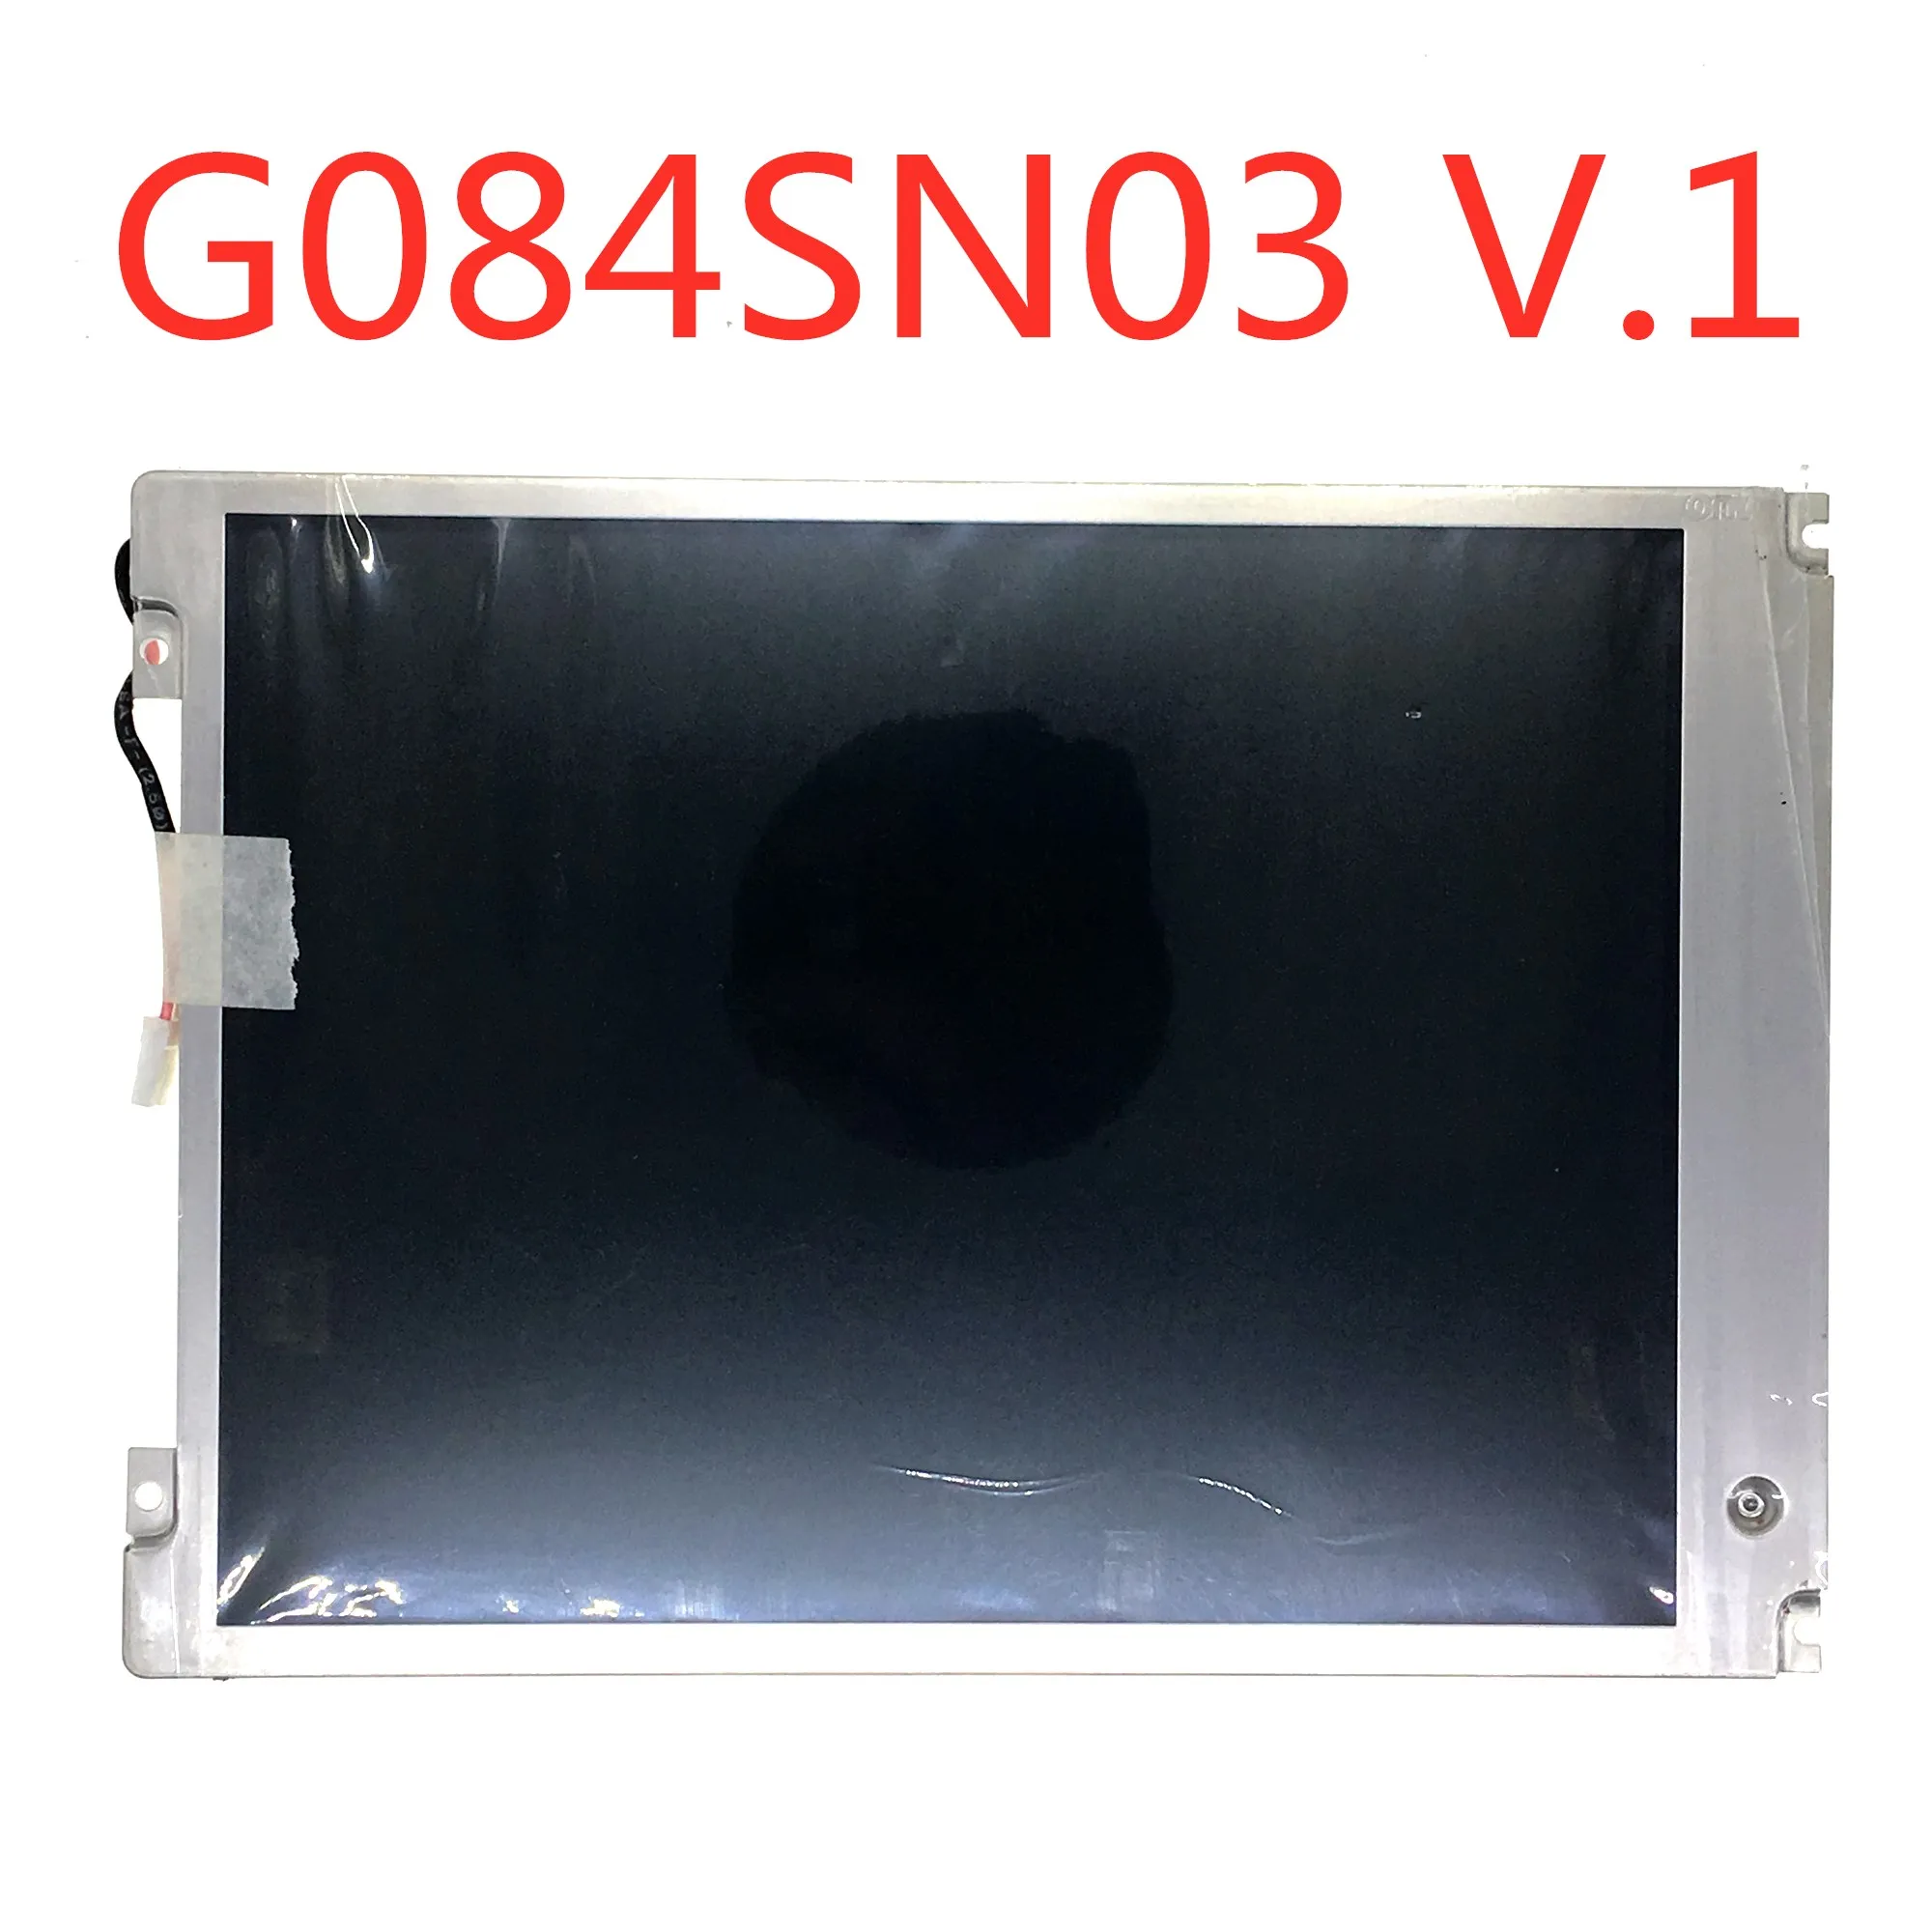 

Оригинальный ЖК-экран 8,4 дюйма для B084SN03 V1 B084SN03 V.1 G084SN03 V1 G084SN03 V.1 800 × 600 TFT